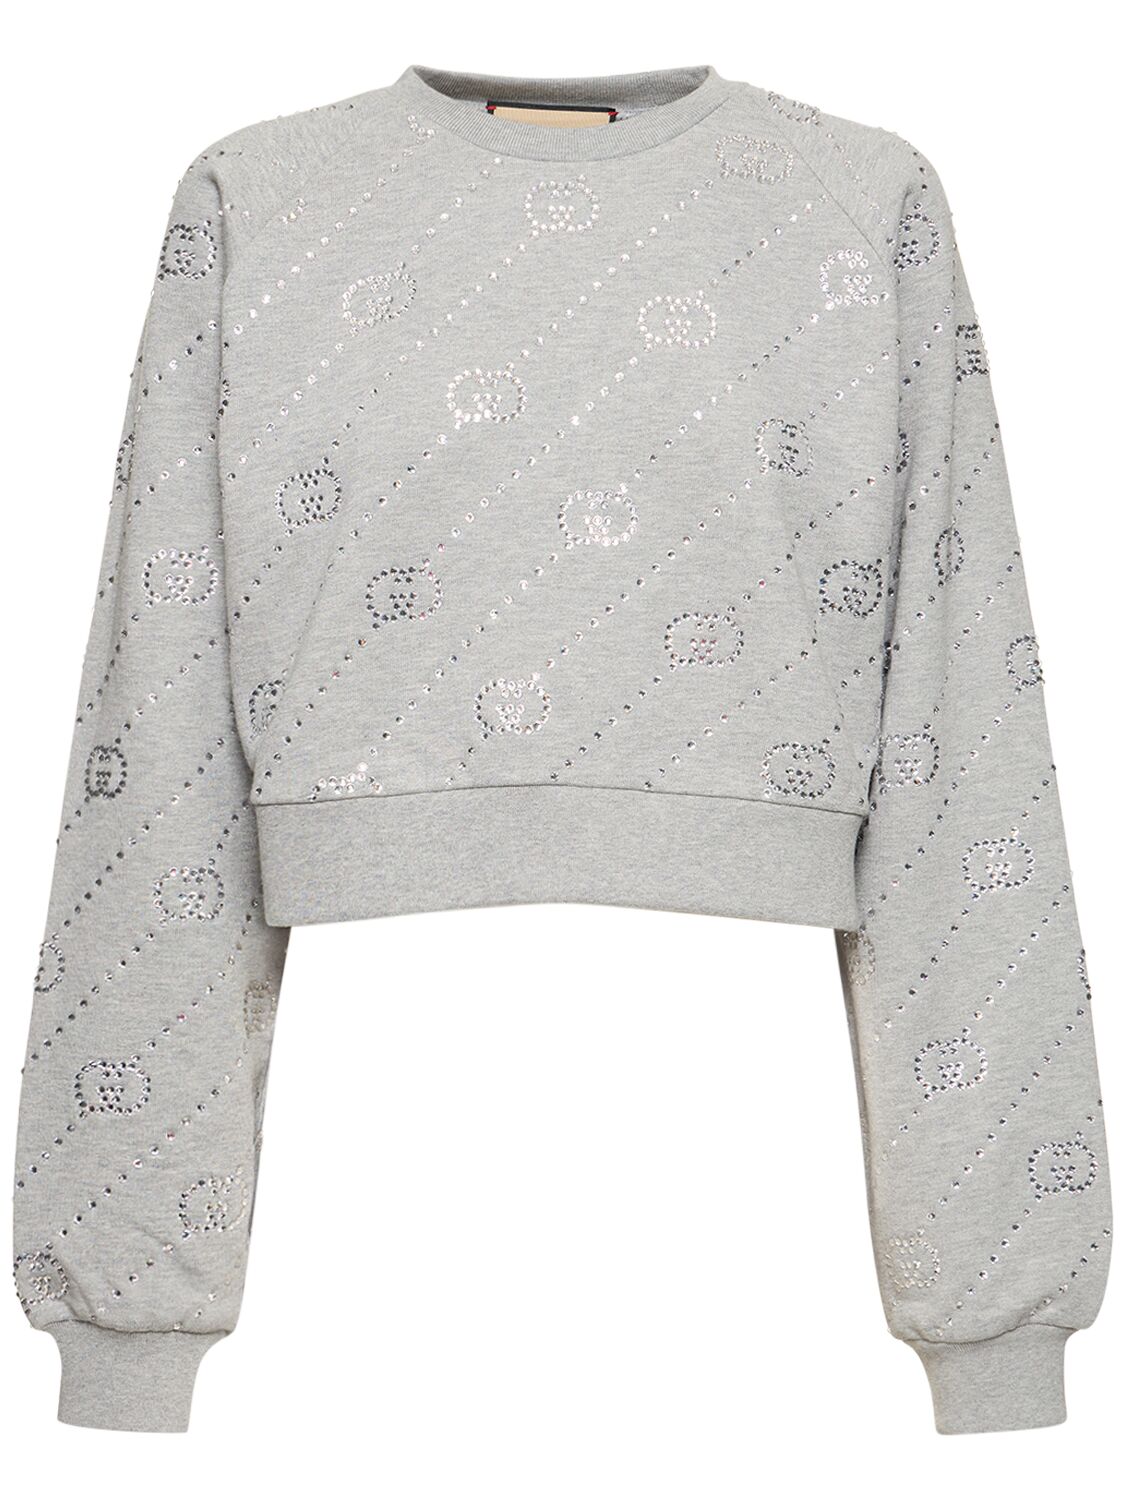 Gucci Gg Cotton Jersey Crop Sweatshirt In Grey